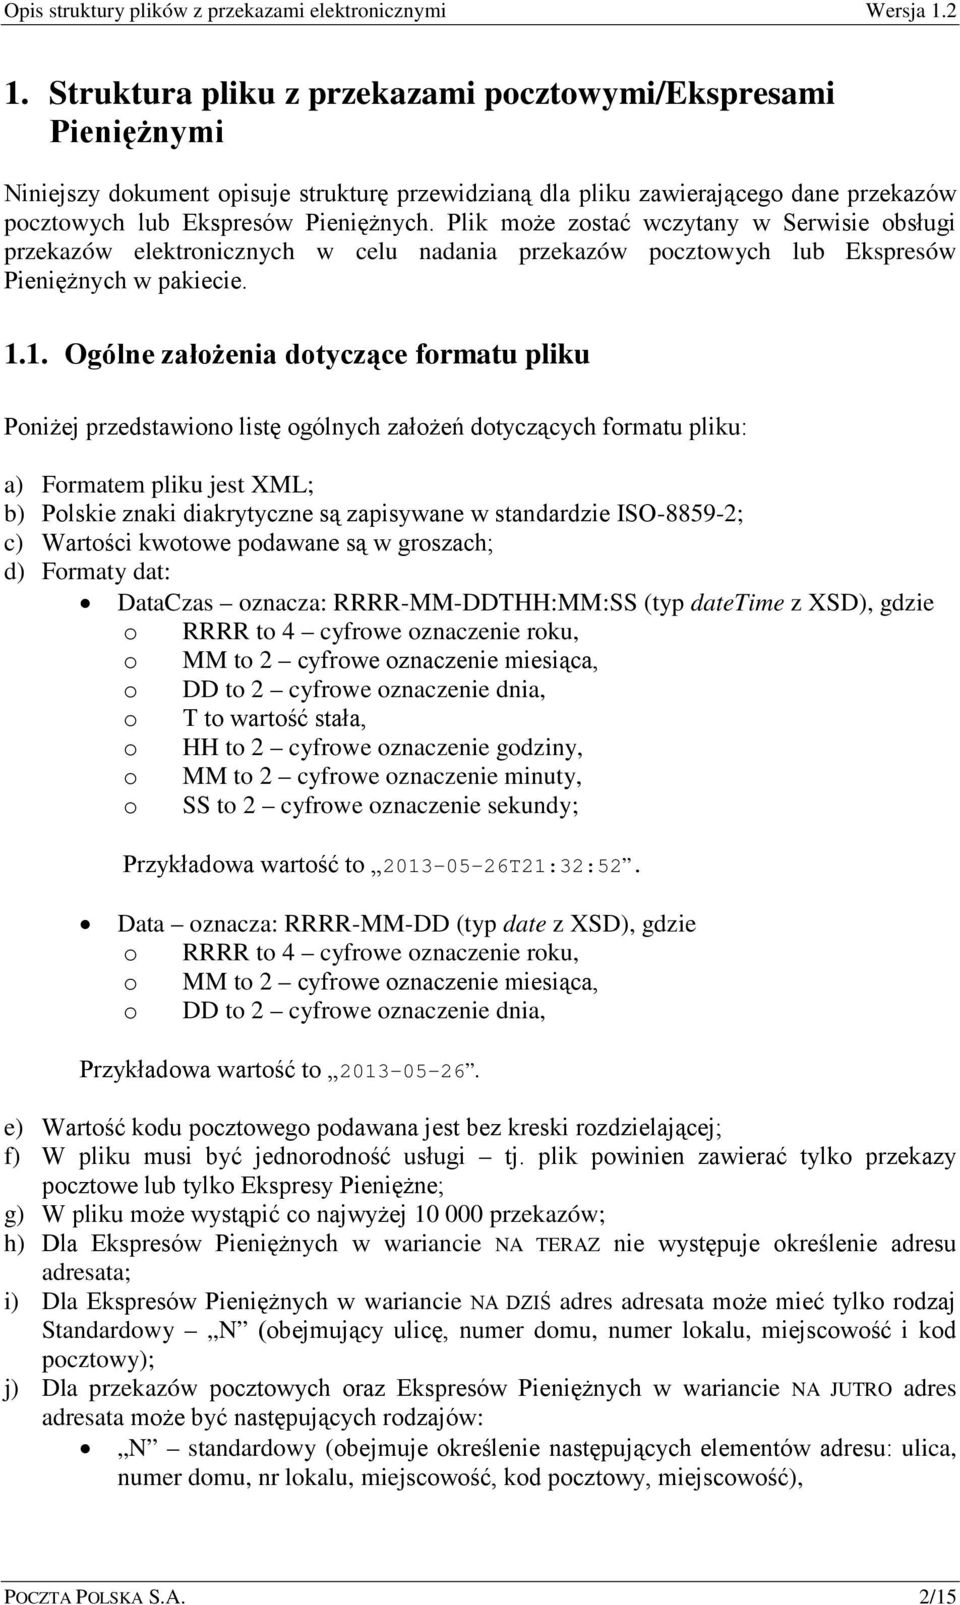 1. Ogólne założenia dotyczące formatu pliku Poniżej przedstawiono listę ogólnych założeń dotyczących formatu pliku: a) Formatem pliku jest XML; b) Polskie znaki diakrytyczne są zapisywane w